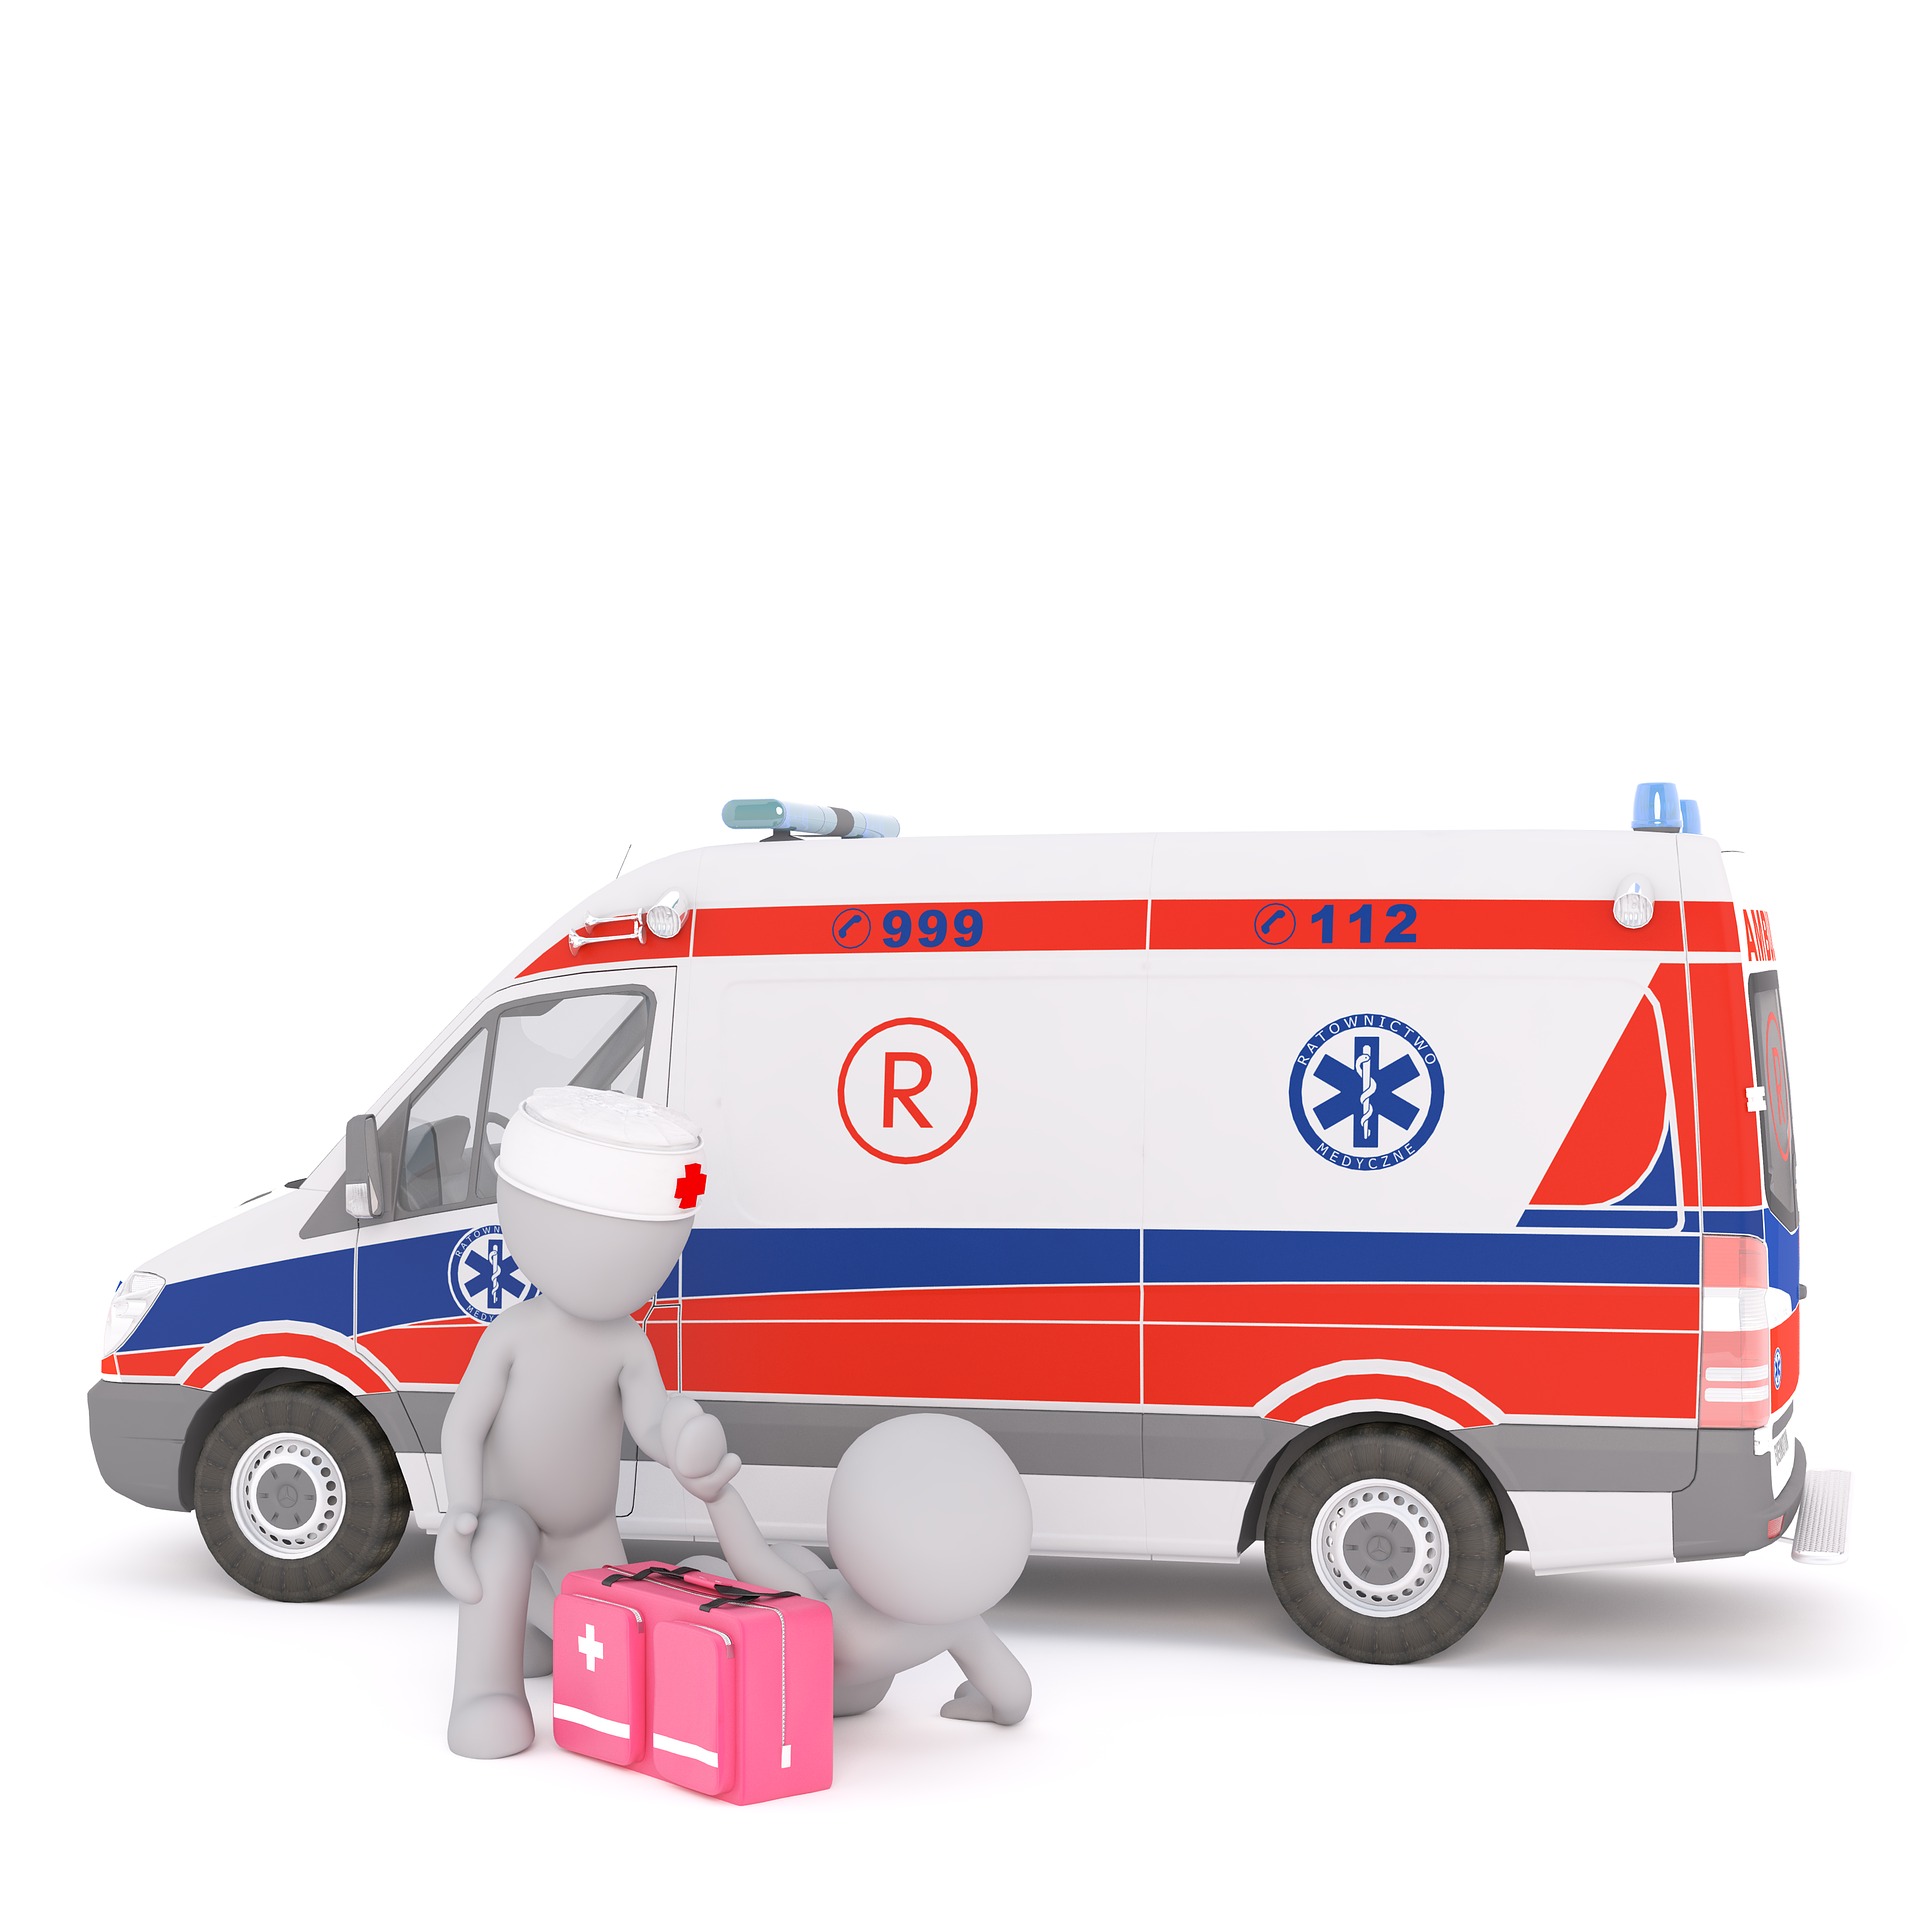 ambulance-1874765_1920